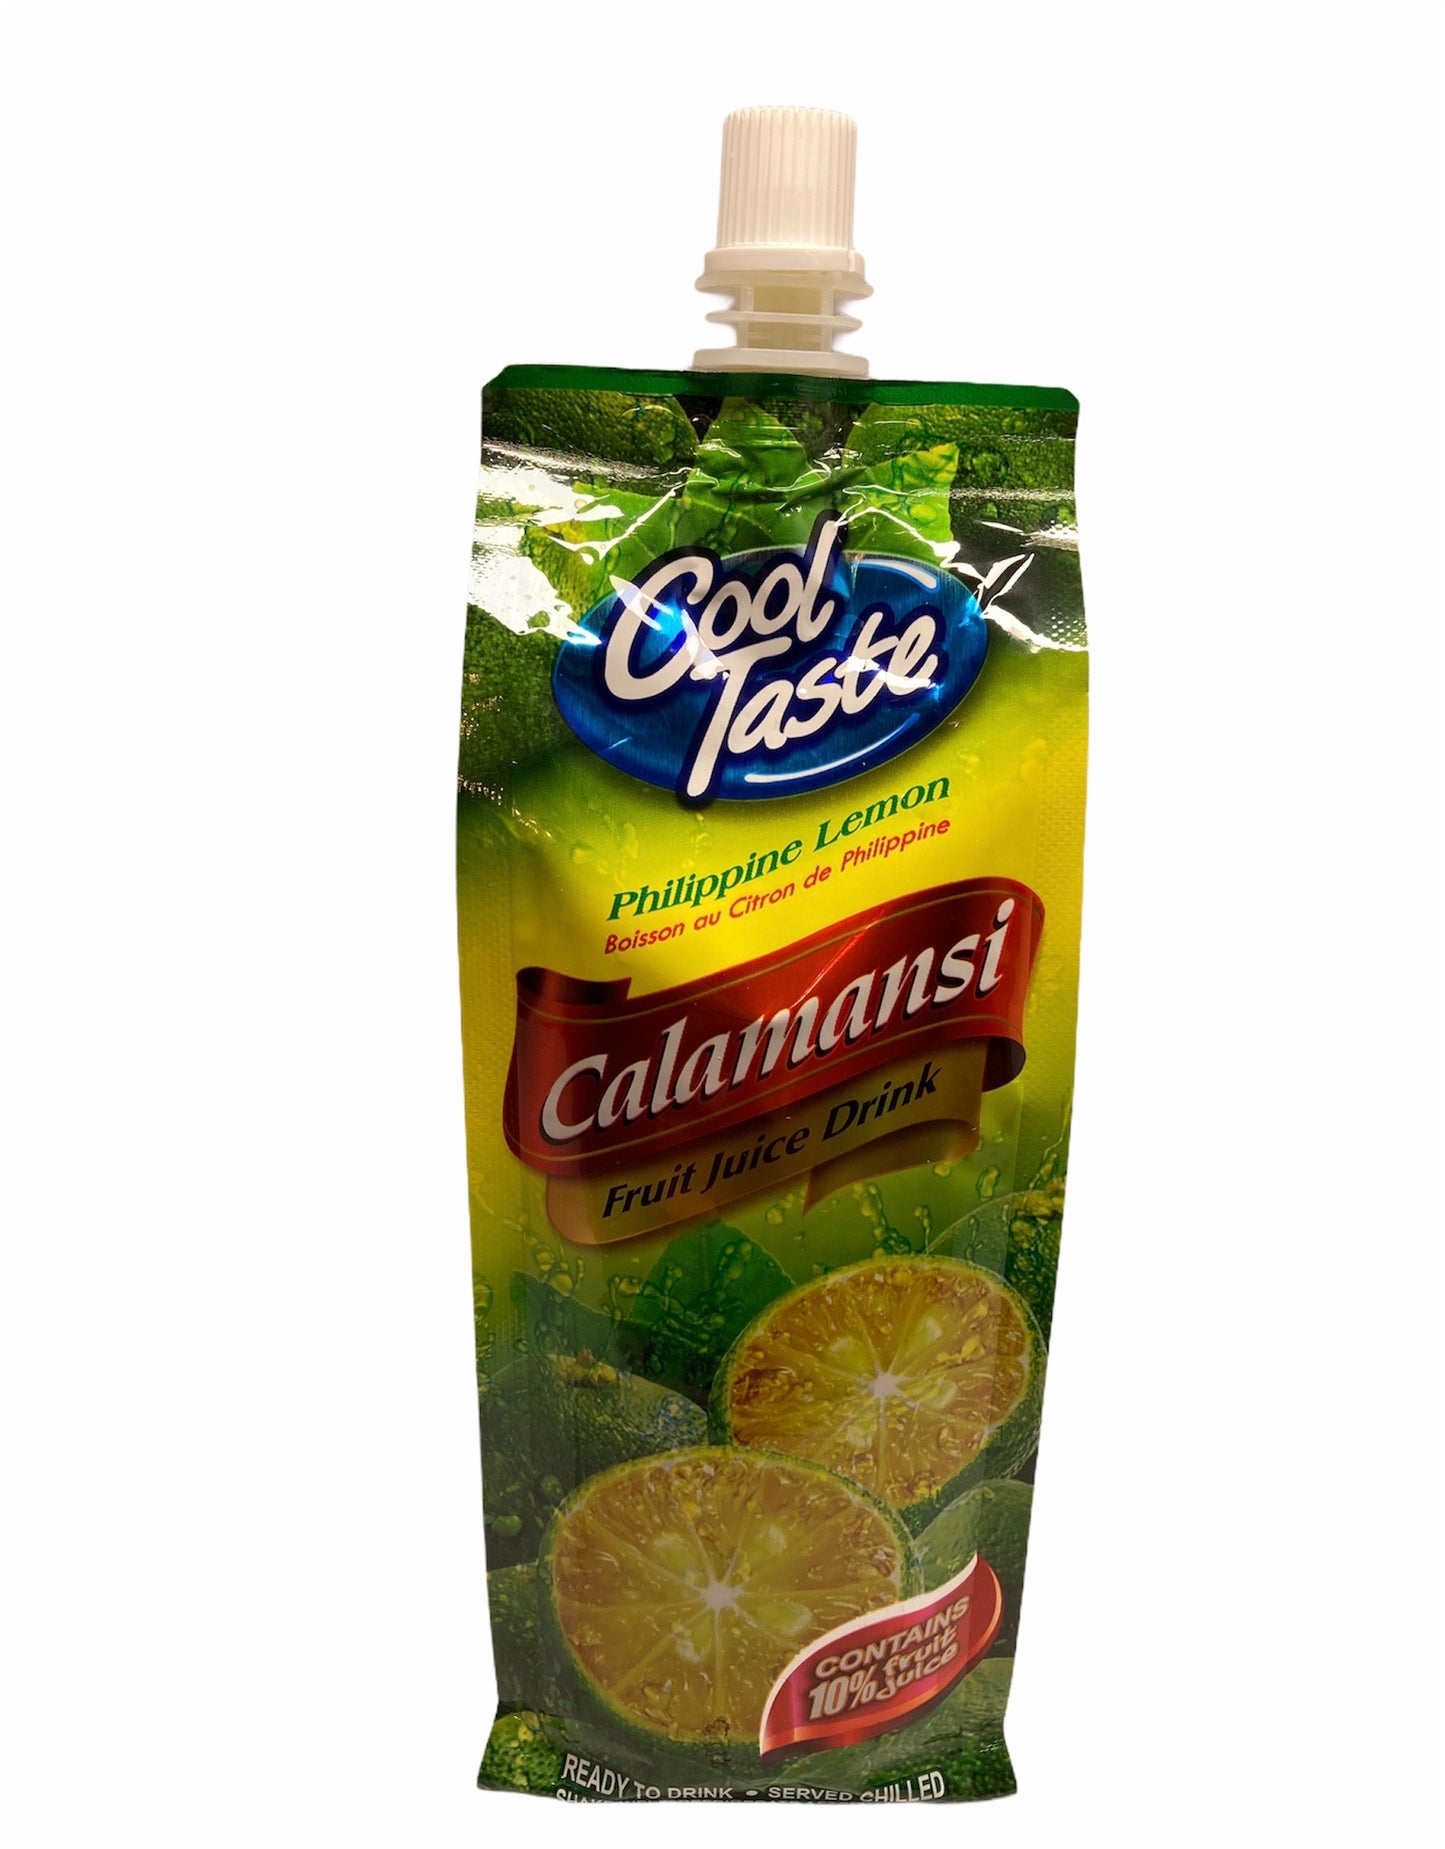 Cool Taste Calamansi Drink 500ml